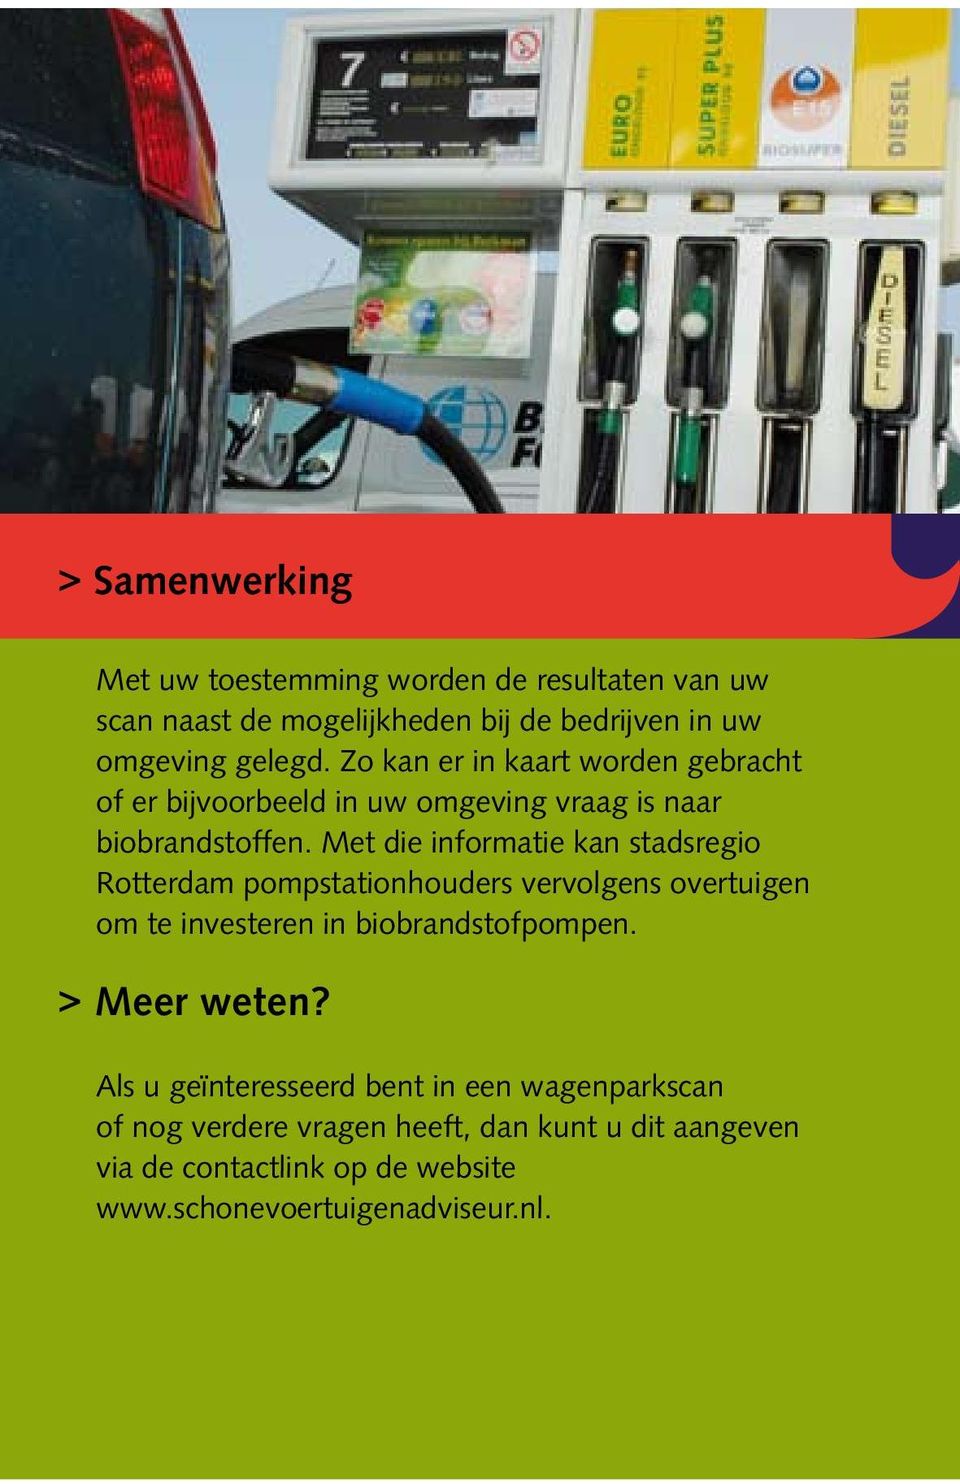 Met die informatie kan stadsregio Rotterdam pompstationhouders vervolgens overtuigen om te investeren in biobrandstofpompen.